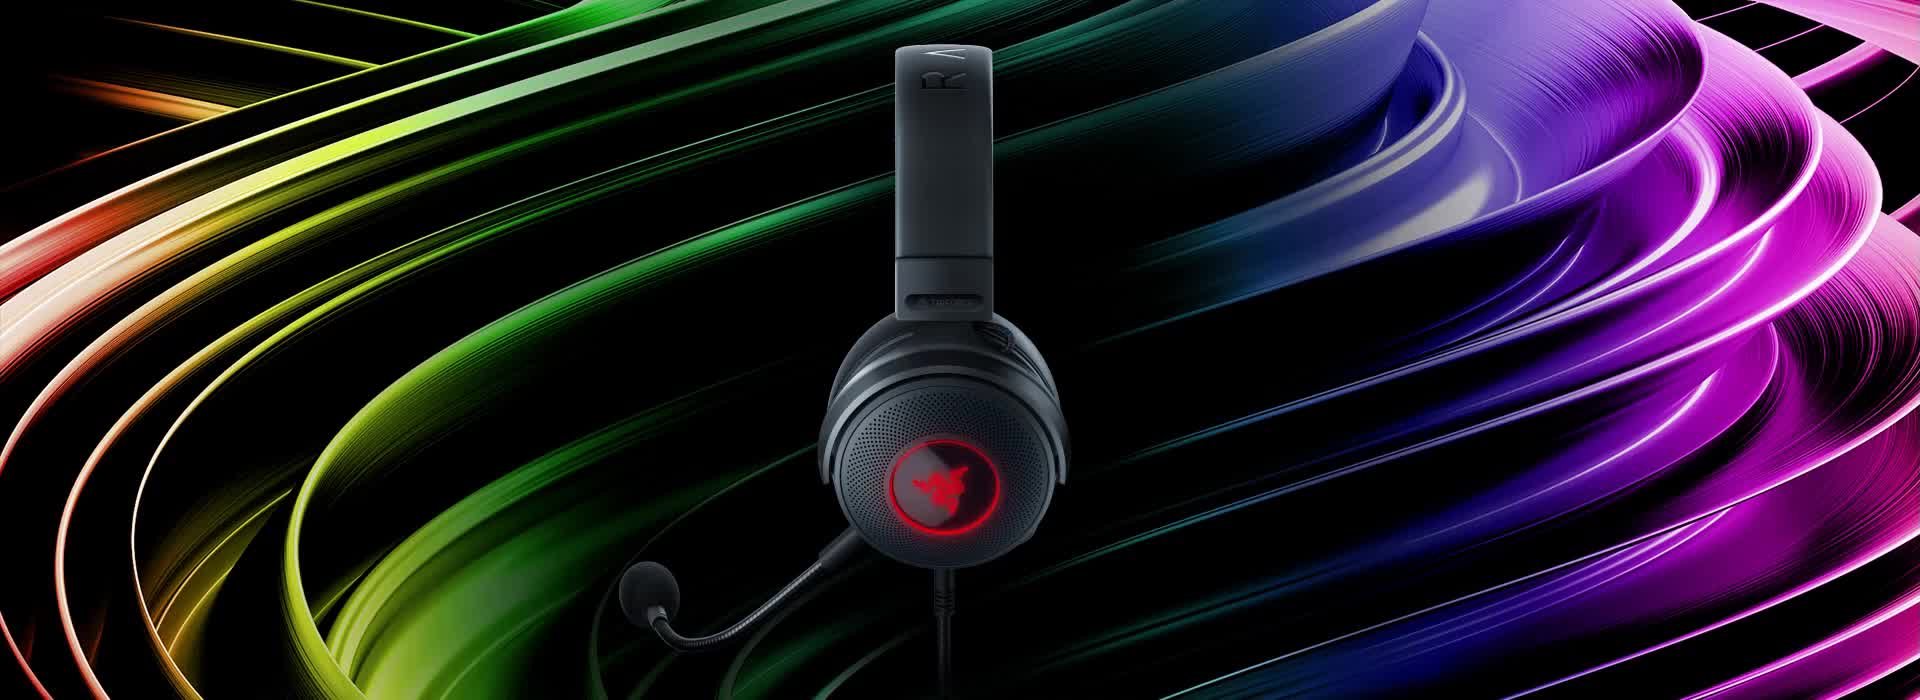 Razer unveils $50 Kraken X gaming headset - CNET